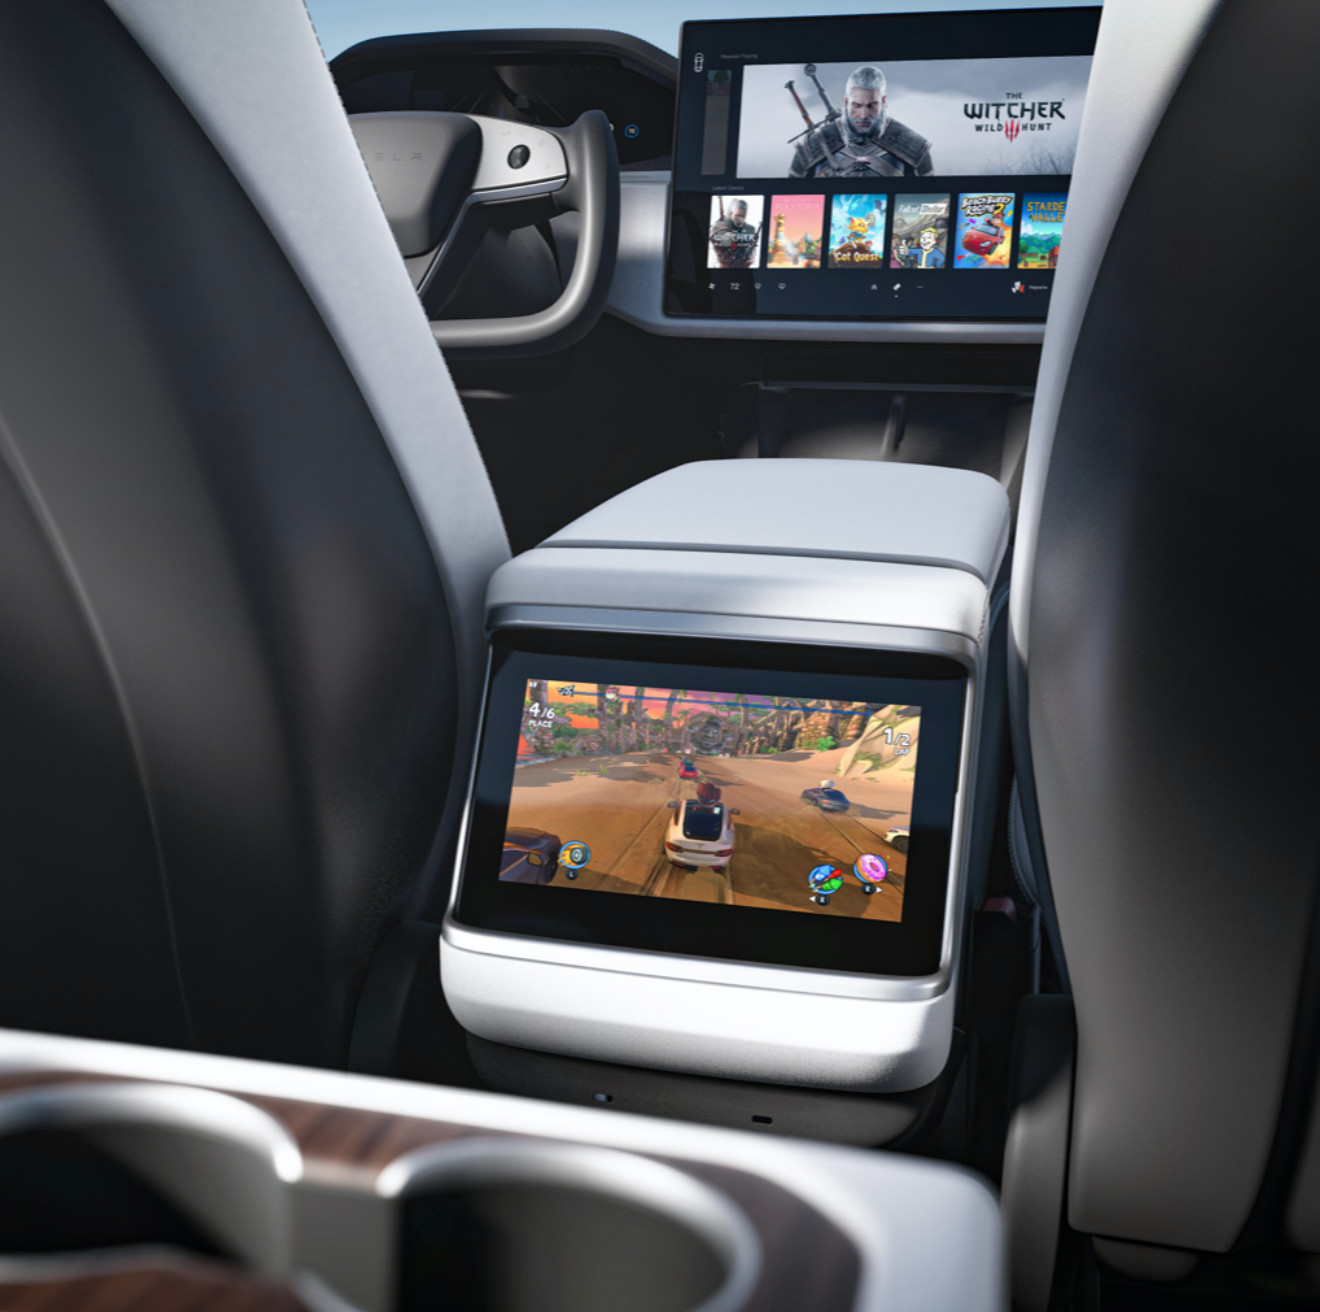 Origin desenvolve um PC Gamer topo de linha dentro de um mini carro da Tesla